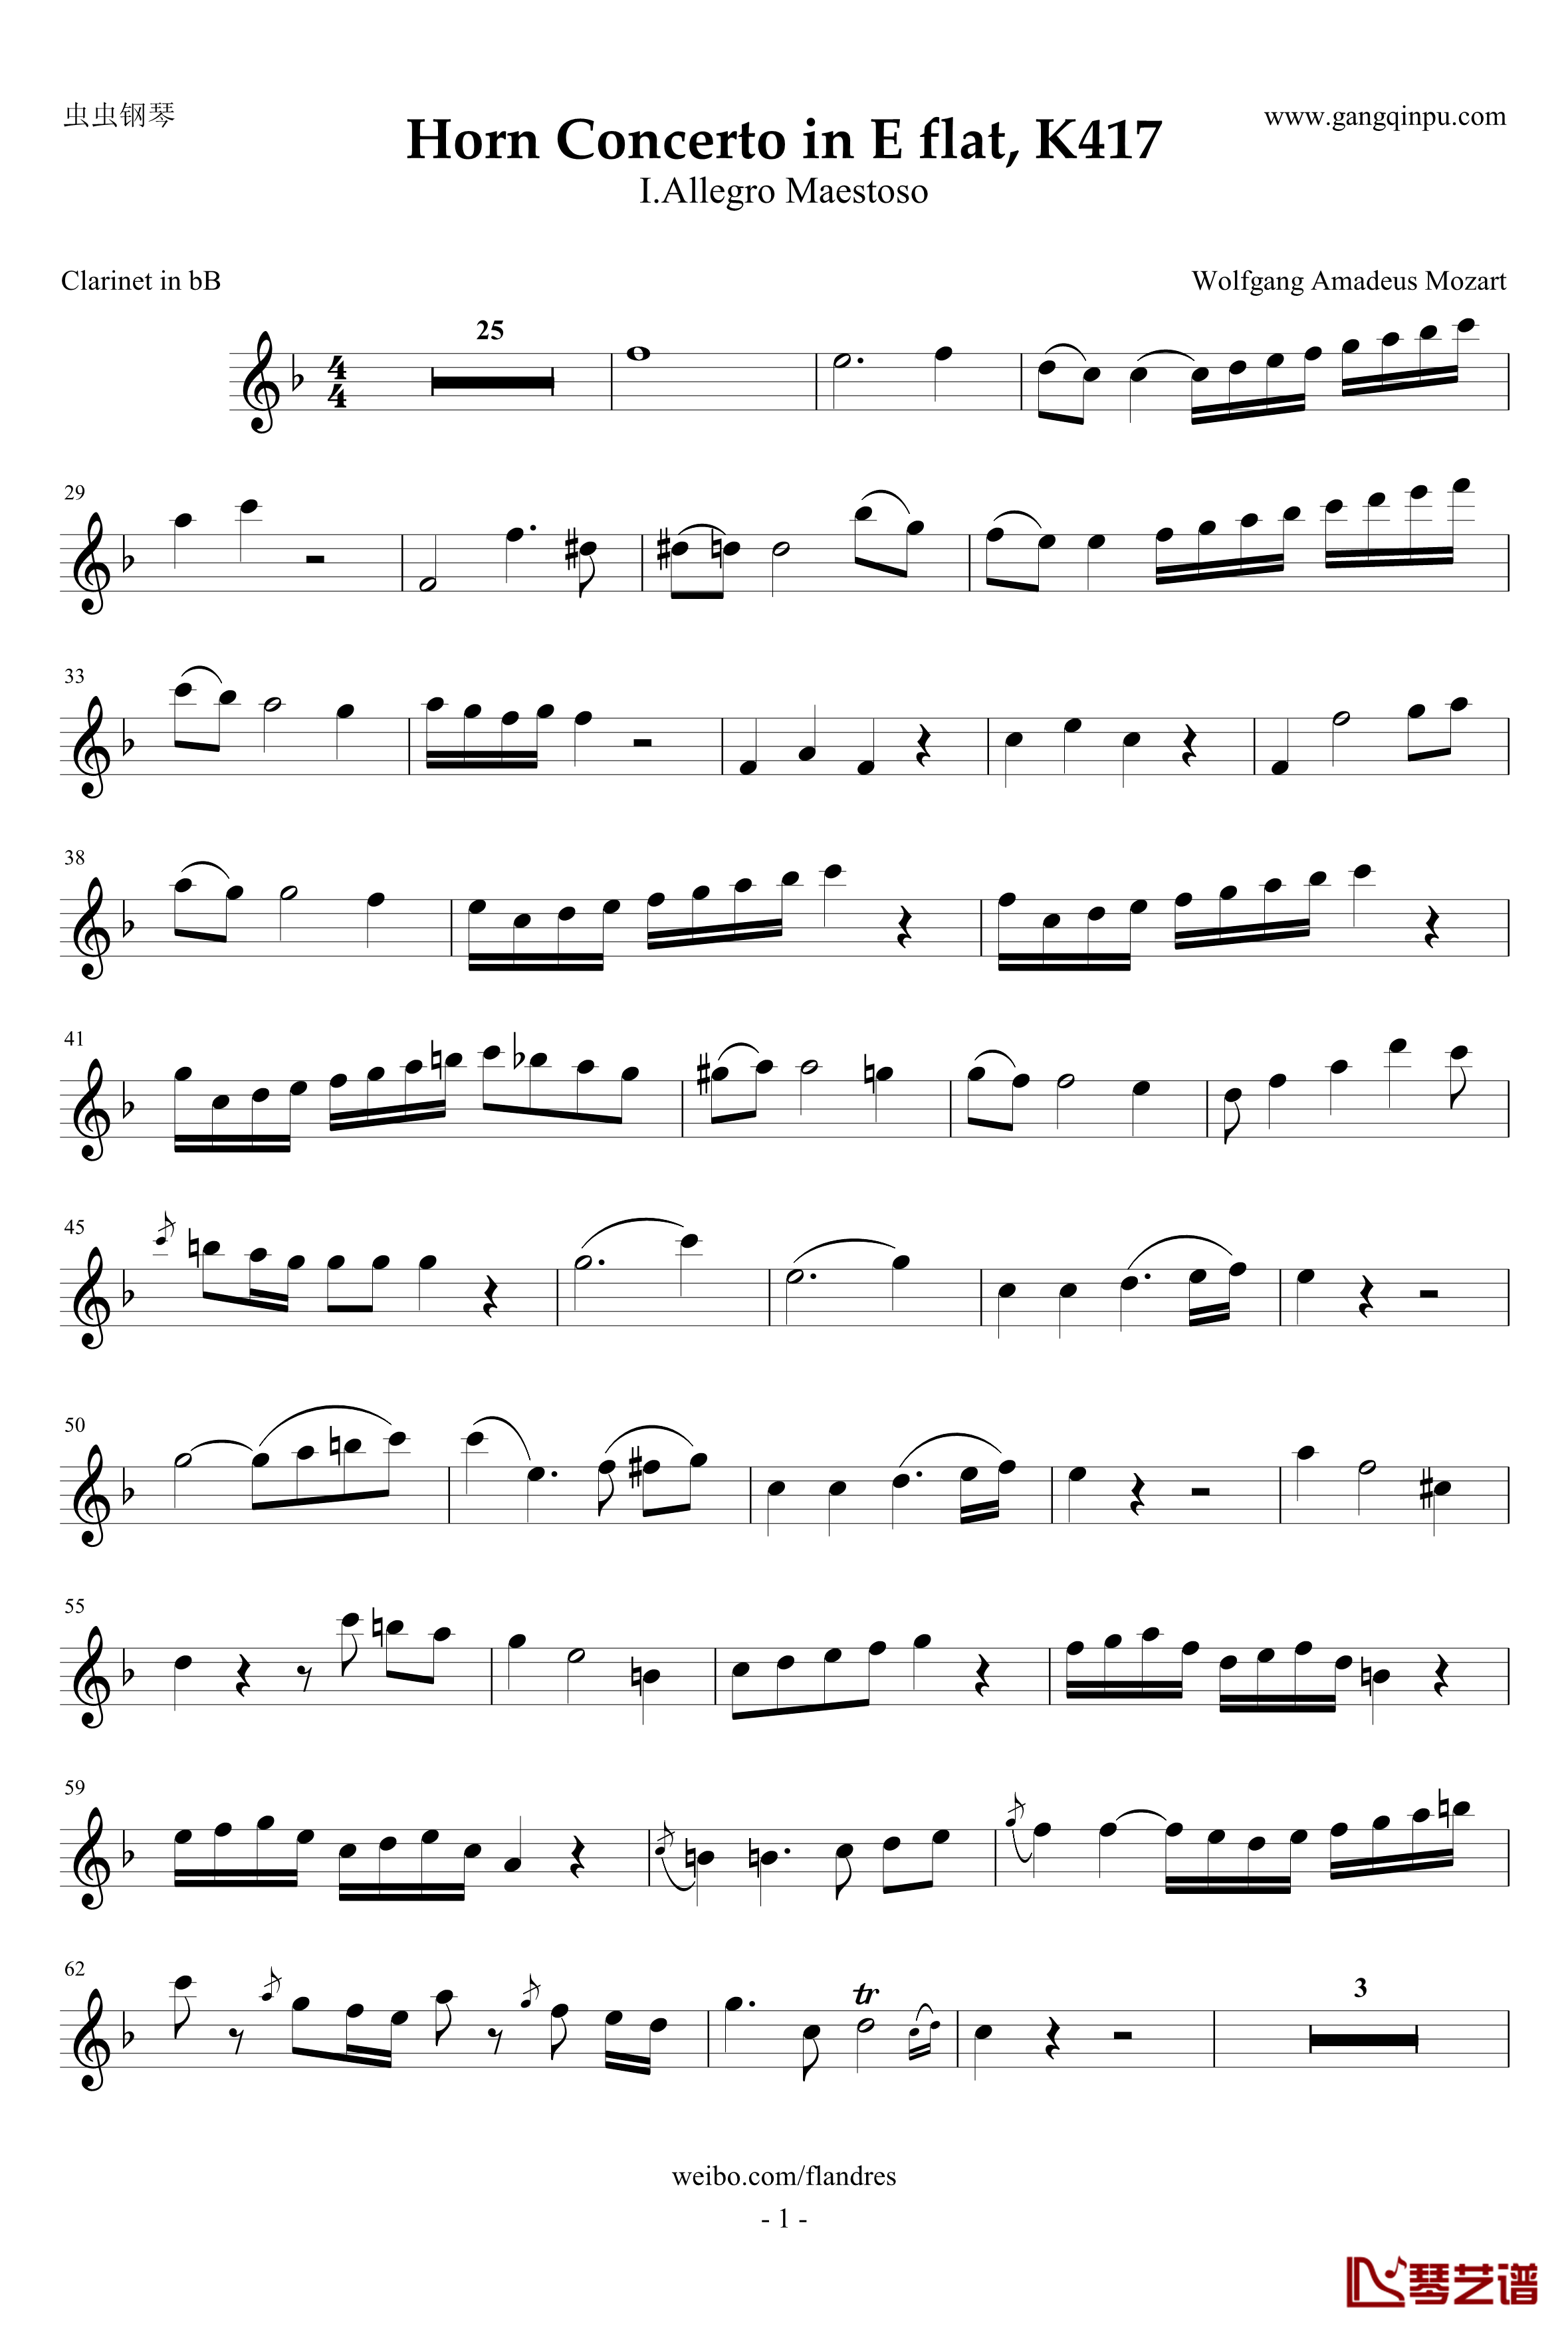 降E大调圆号协奏曲钢琴谱-bB单簧管版-莫扎特1